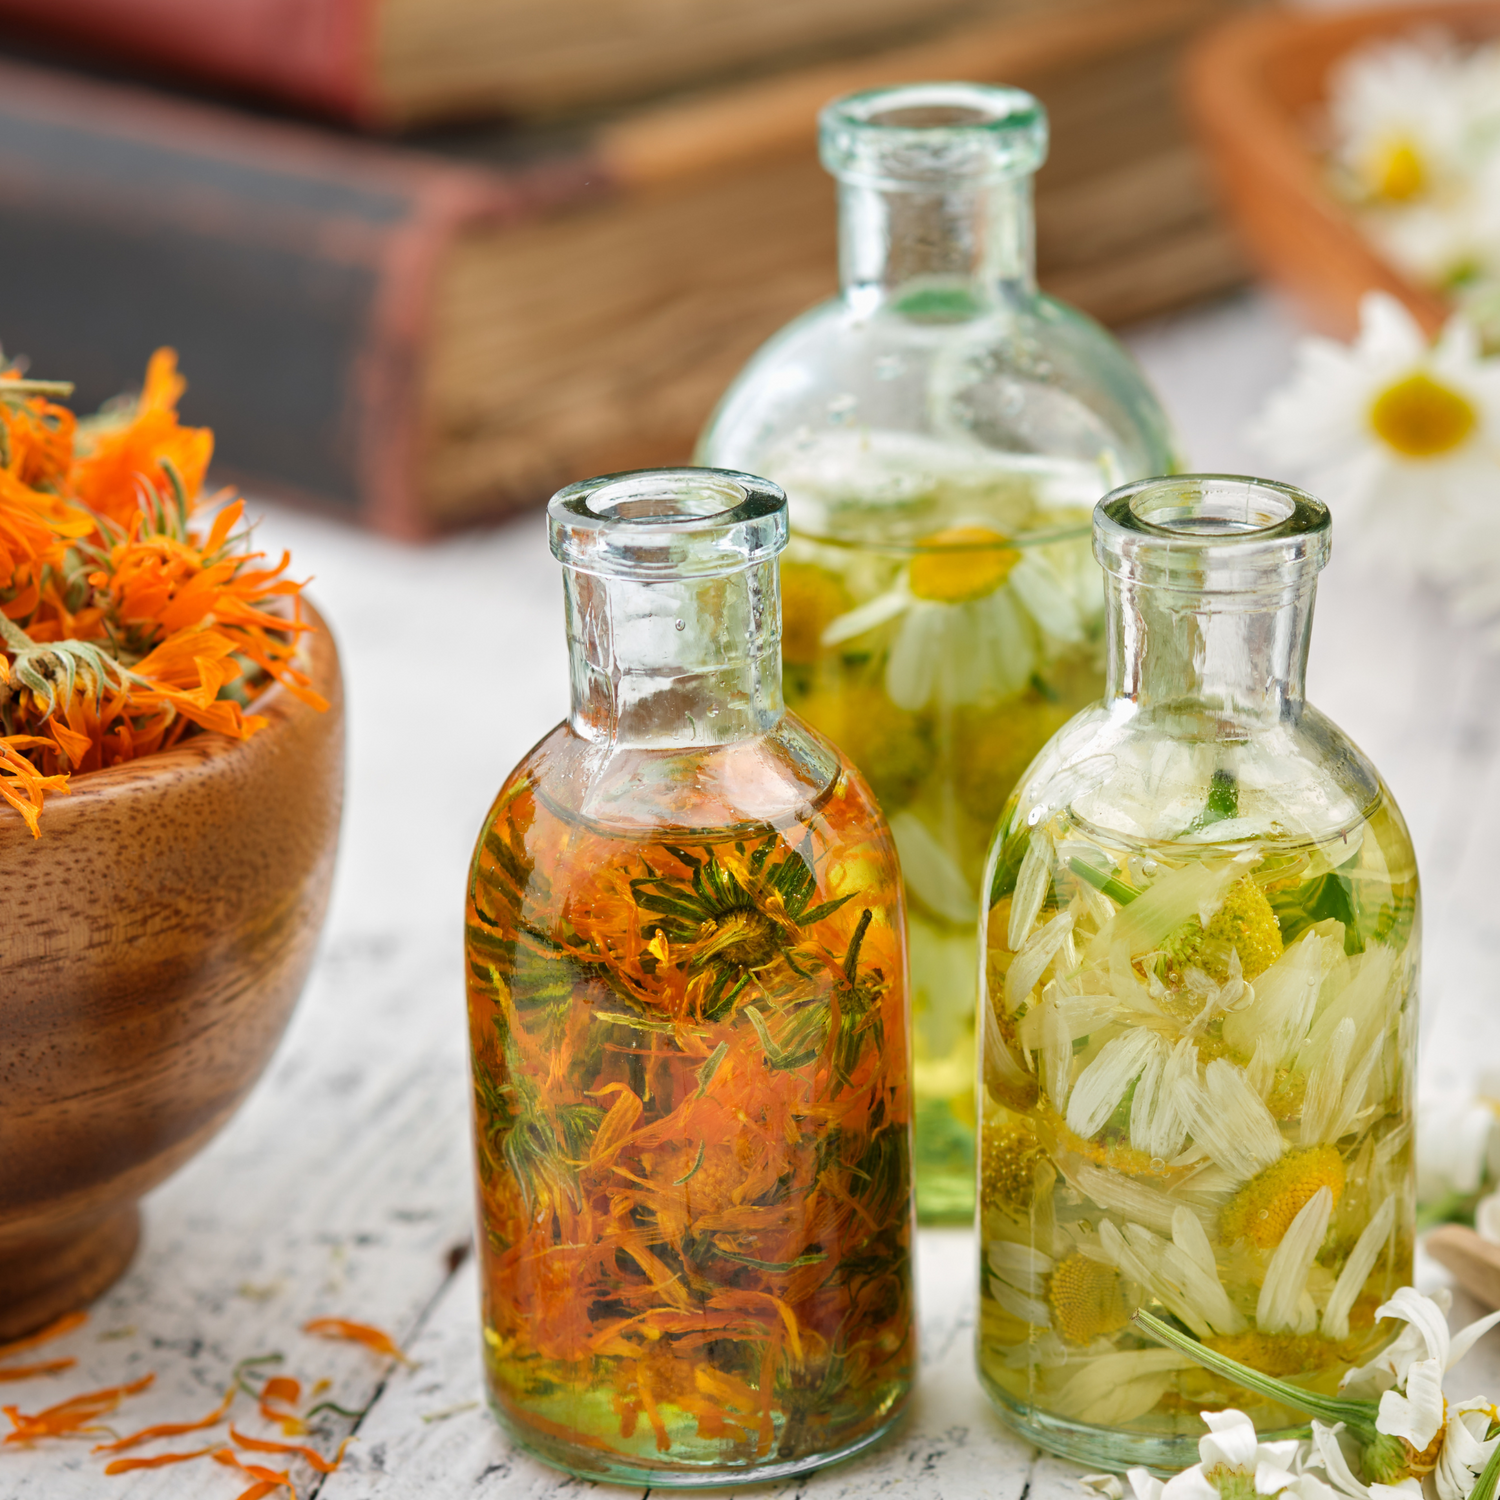 calendula and marigold infused oils